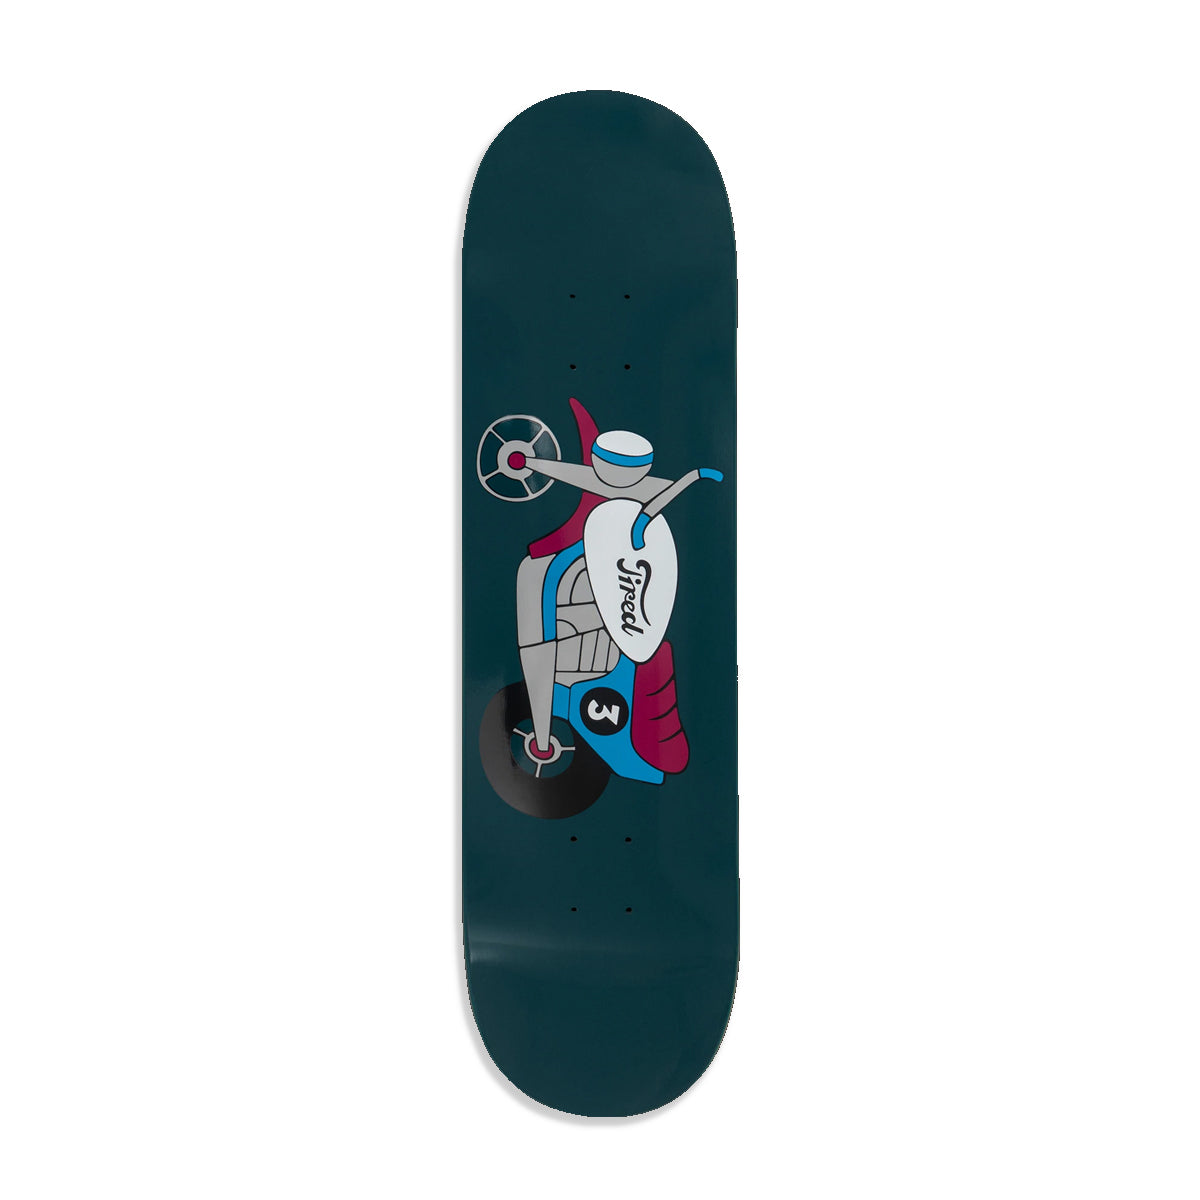 Tired Moto Sports Skateboard Deck 8.25" - Apple Valley Emporium